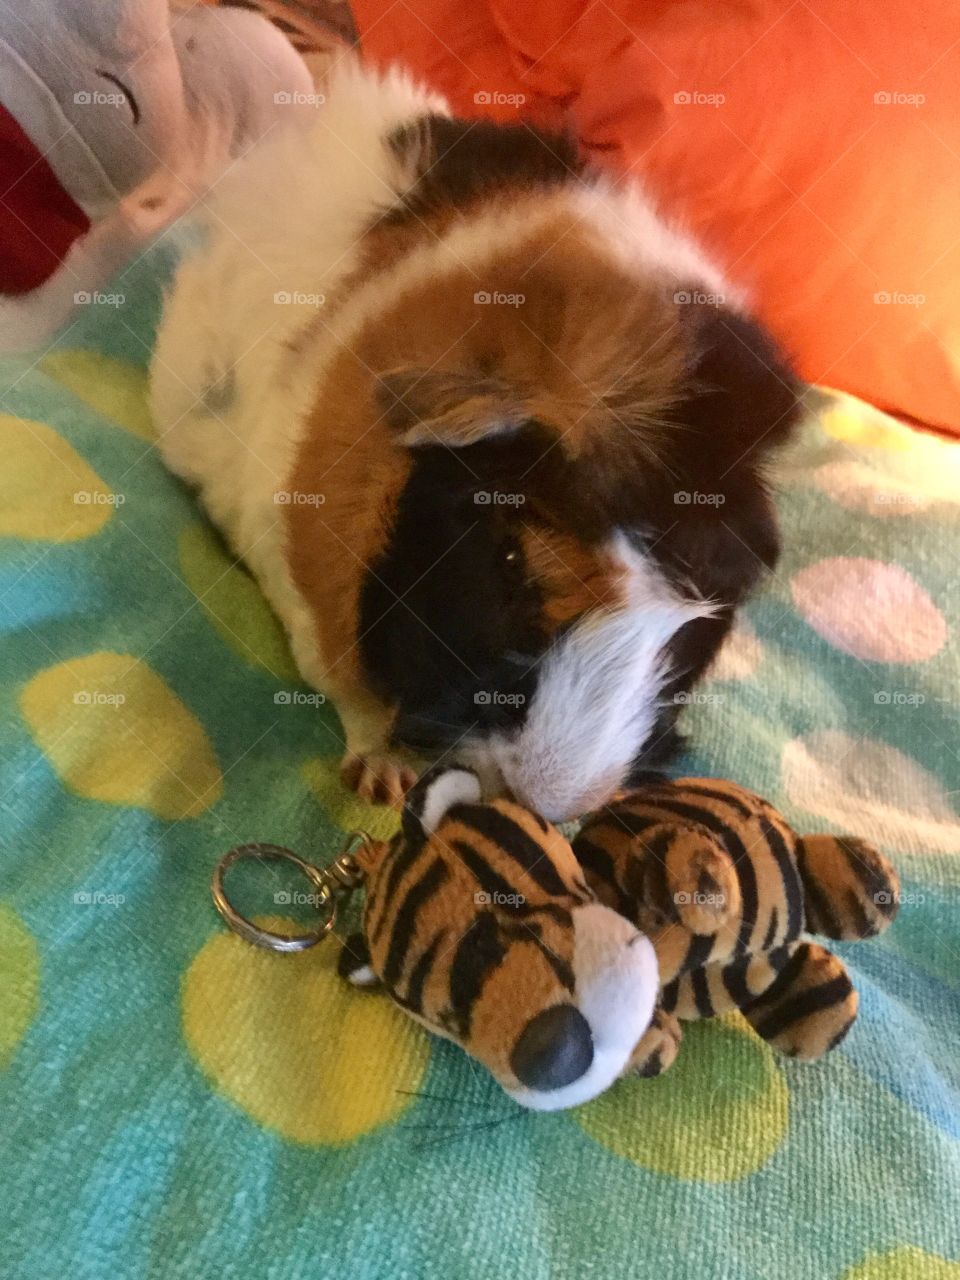 Sammy loves his toy Tigger 